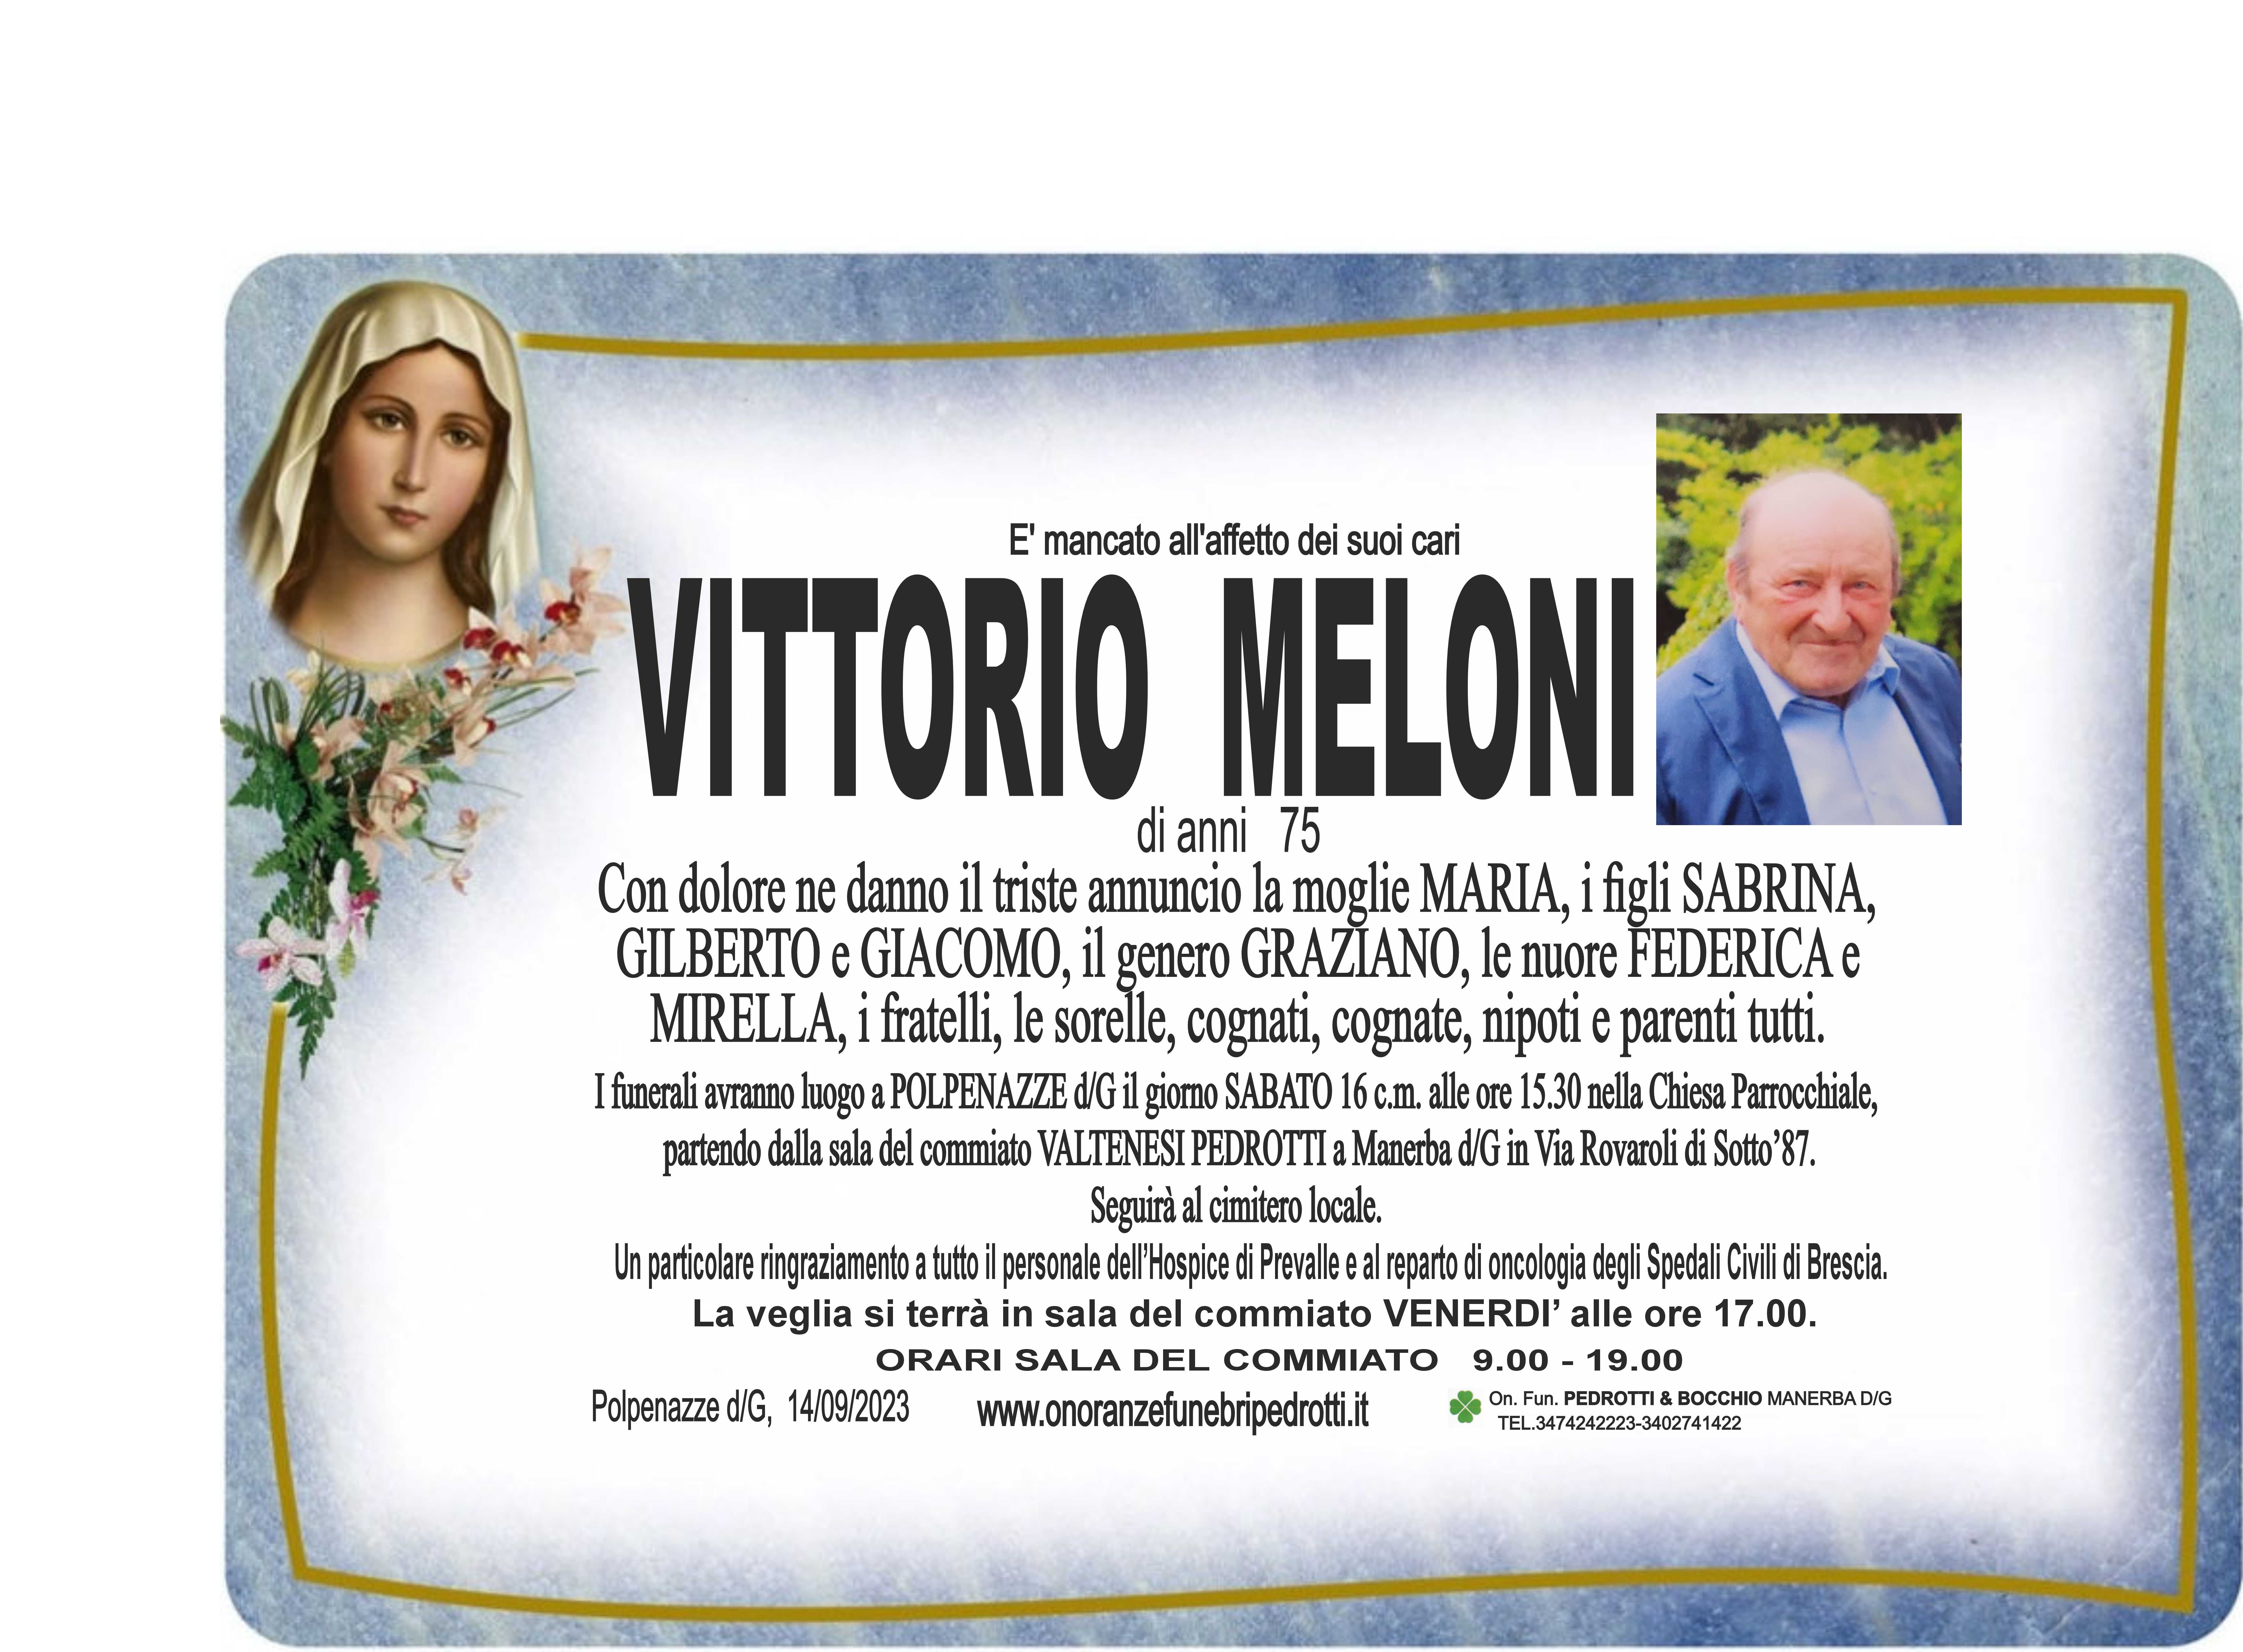 Scopri di più sull'articolo Meloni Vittorio